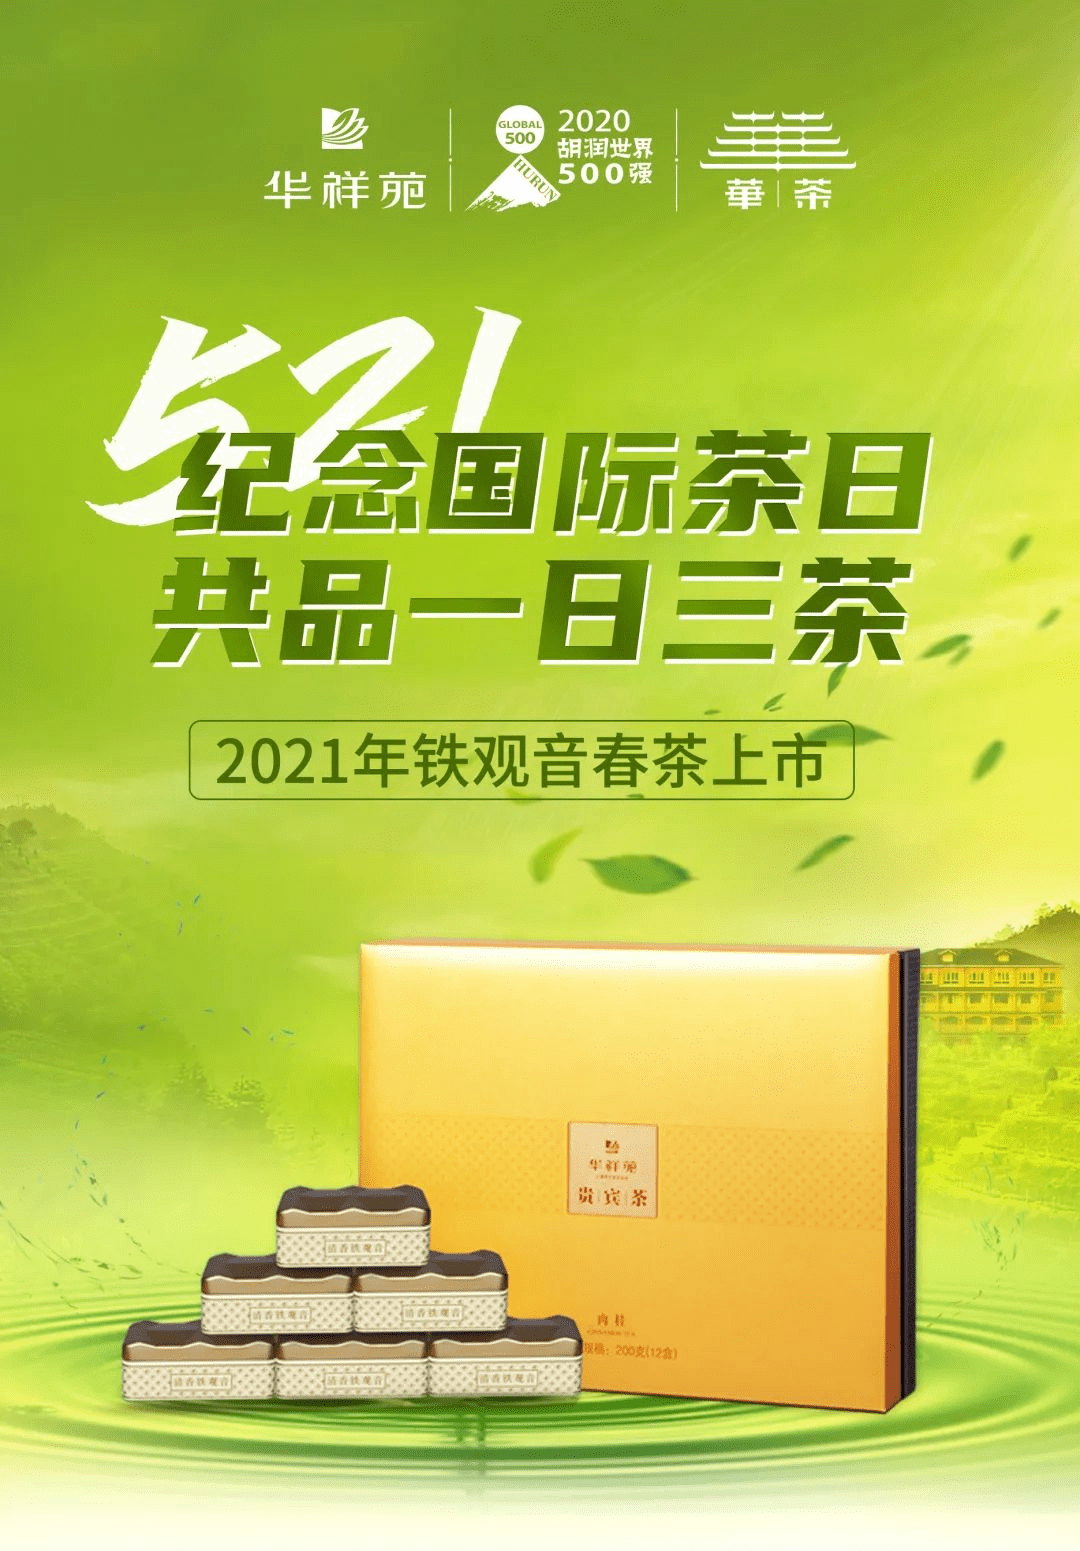 "在521国际茶日来临之际,华祥苑发出"一日三茶"的健康饮茶倡议.